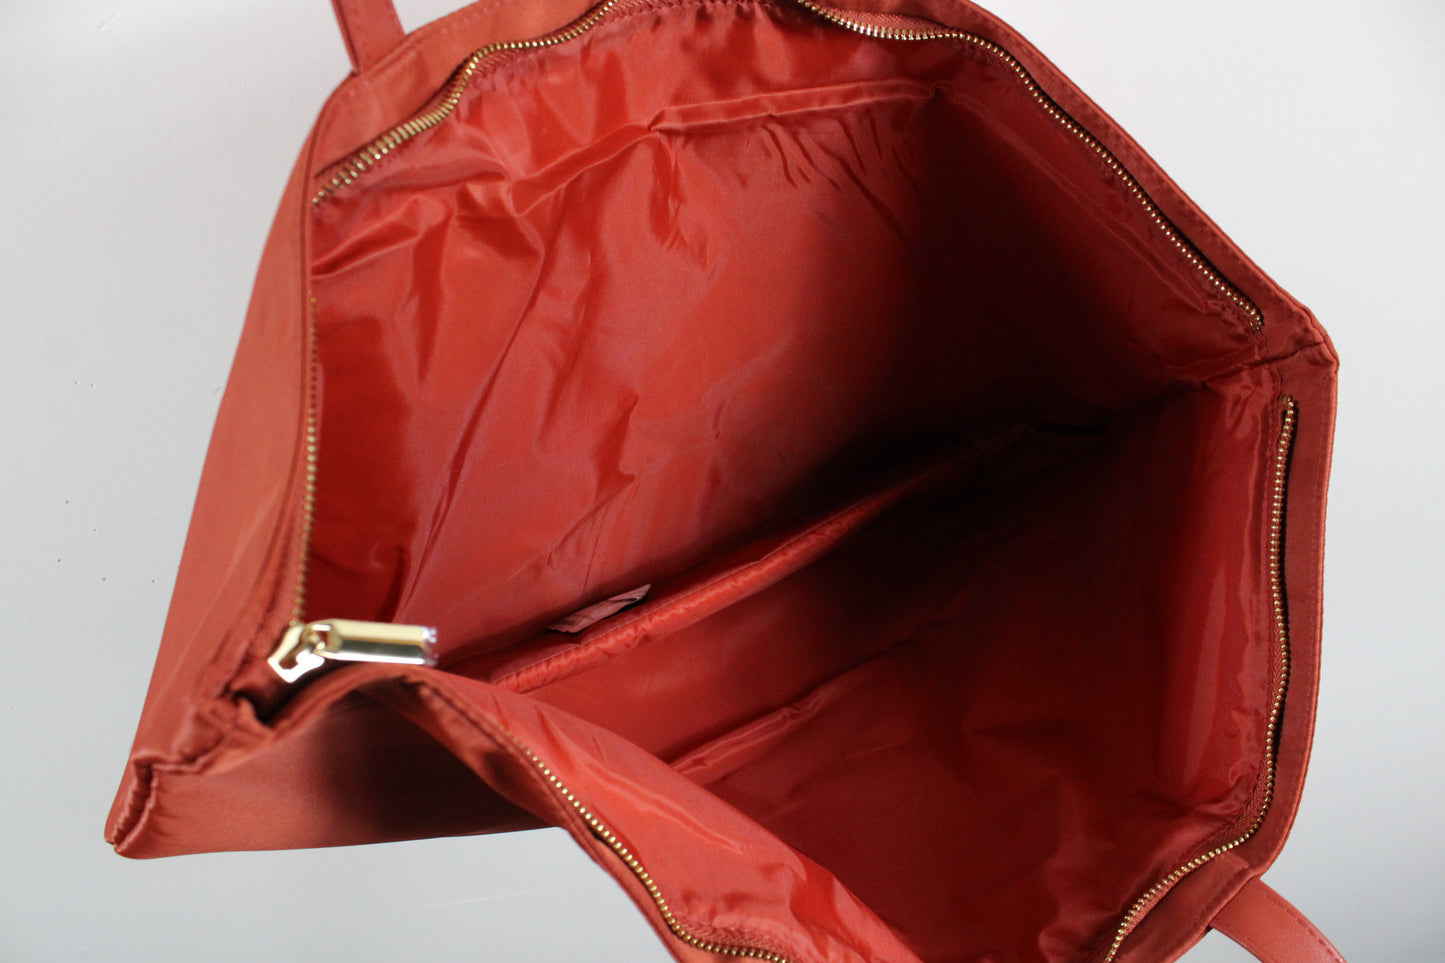 Red Tote Bag